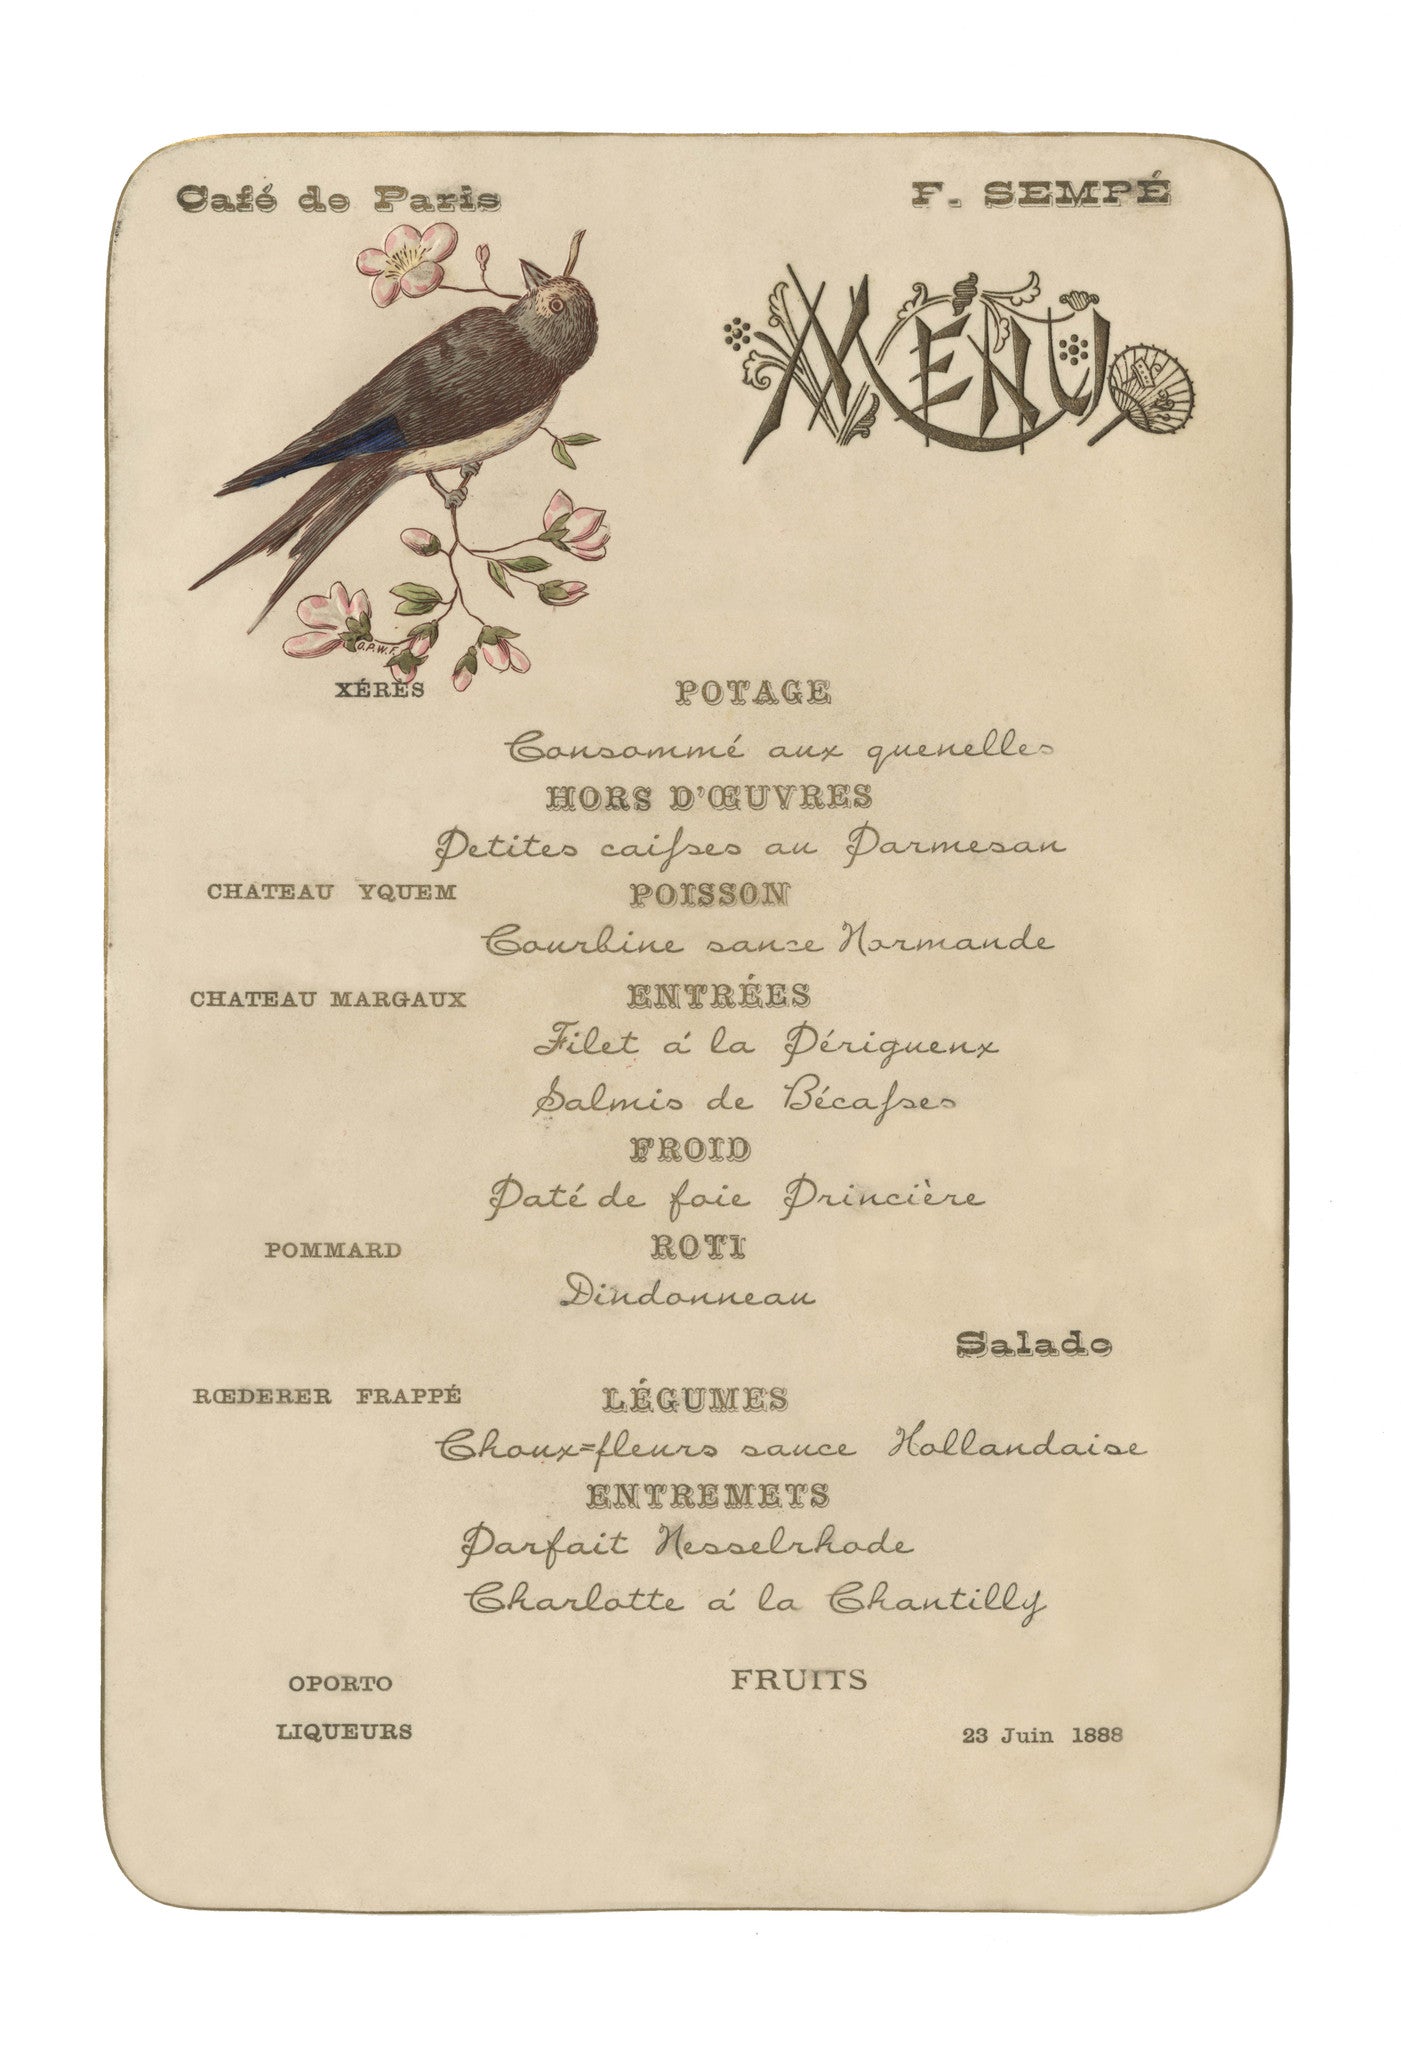 Café de Paris (Bird), Buenos Aires, June 1888 Vintage French menu